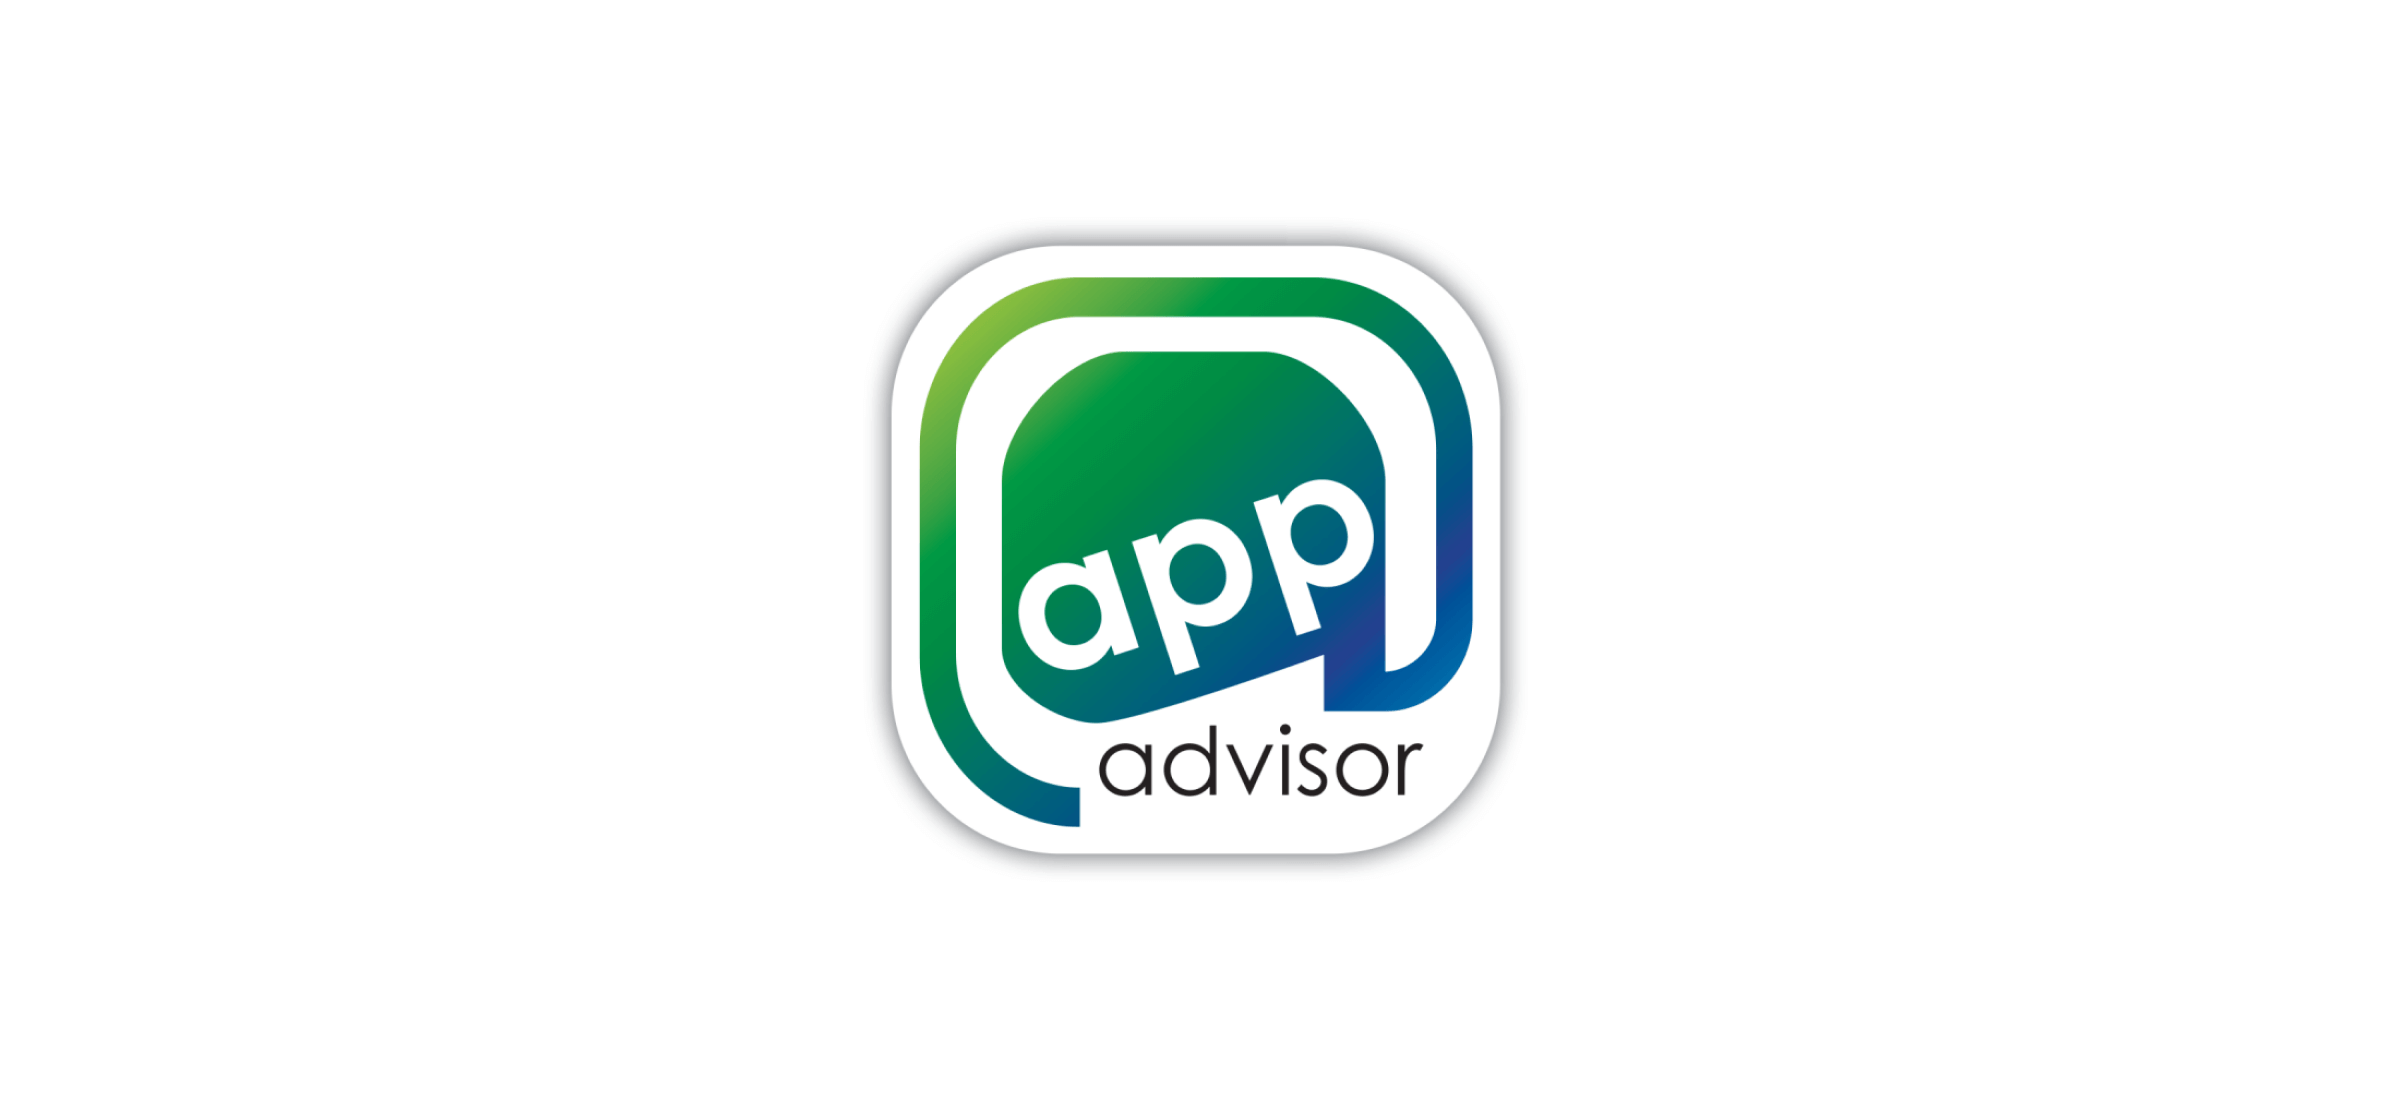 The App Advisor logo